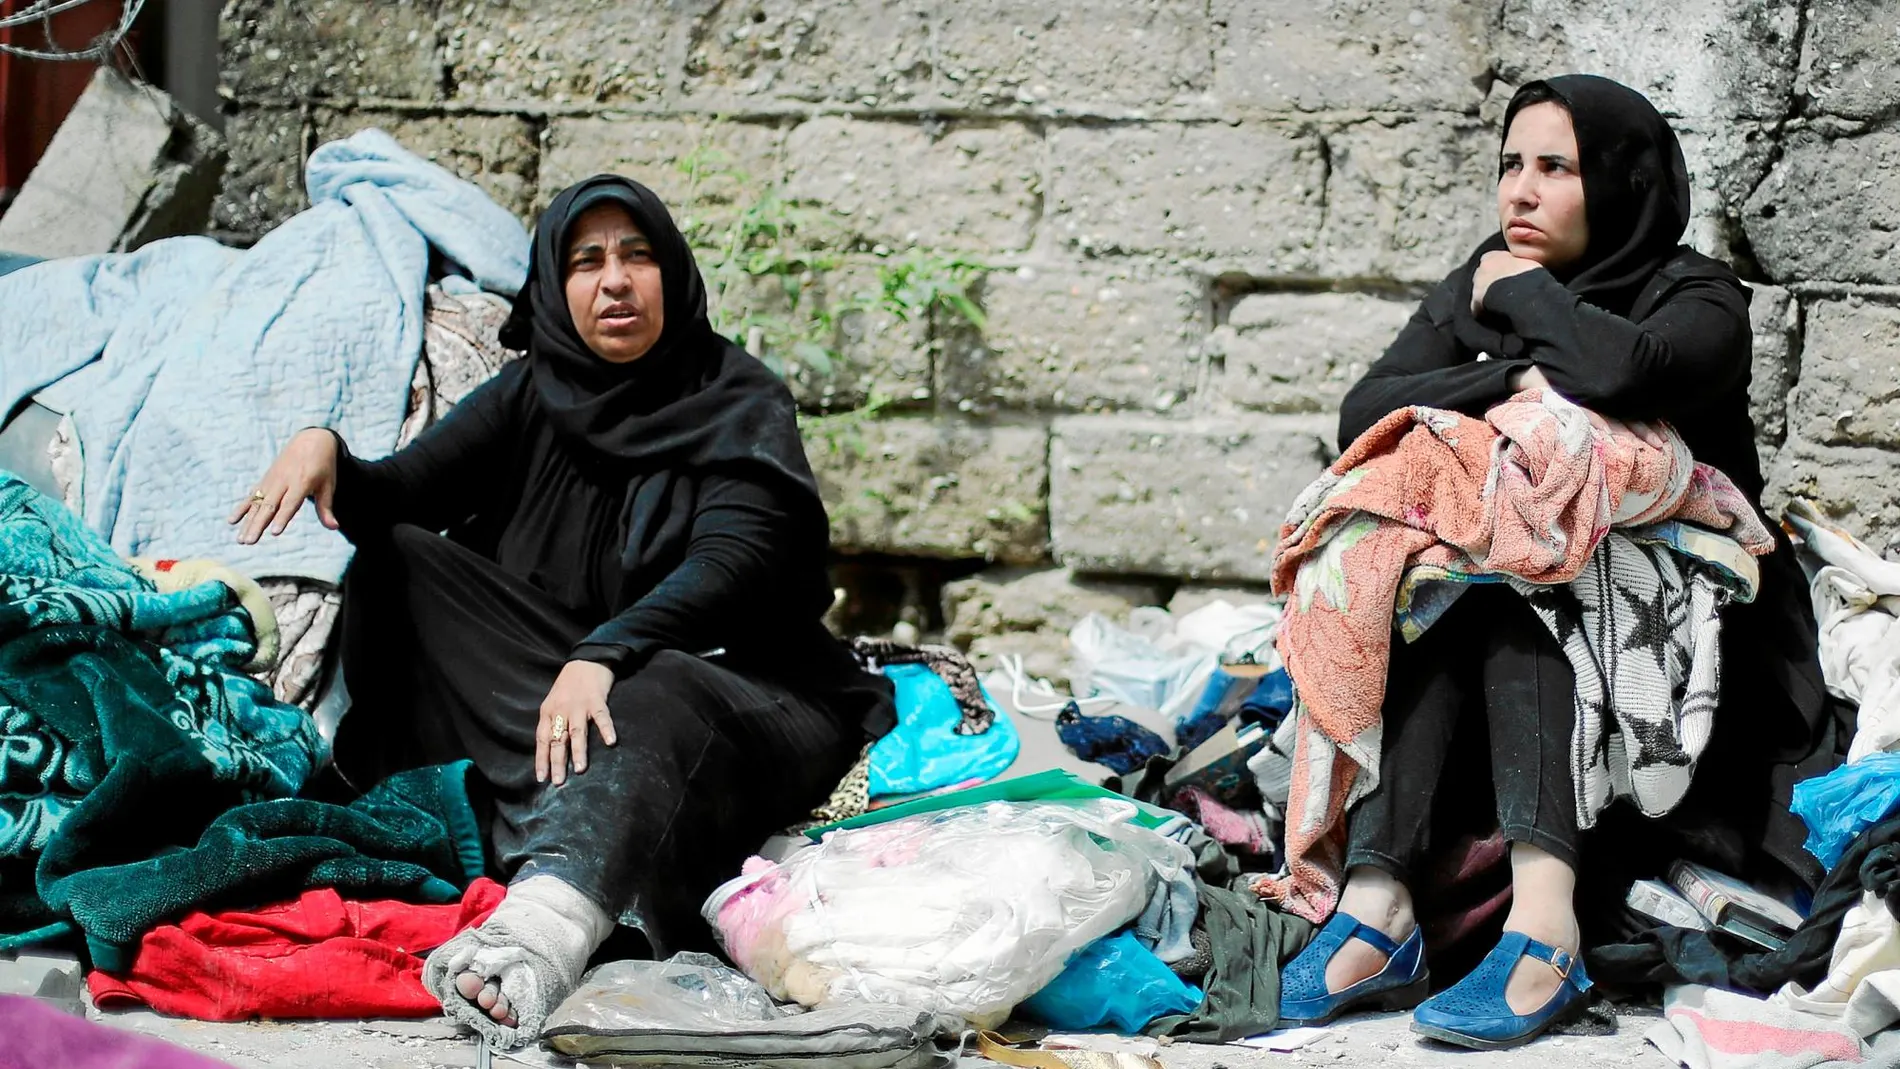 Las más vulnerables. Dos mujeres sentadas en la calle con sus pertenencias tras ser destruida su casa por ataques israelíes. Foto: Reuters